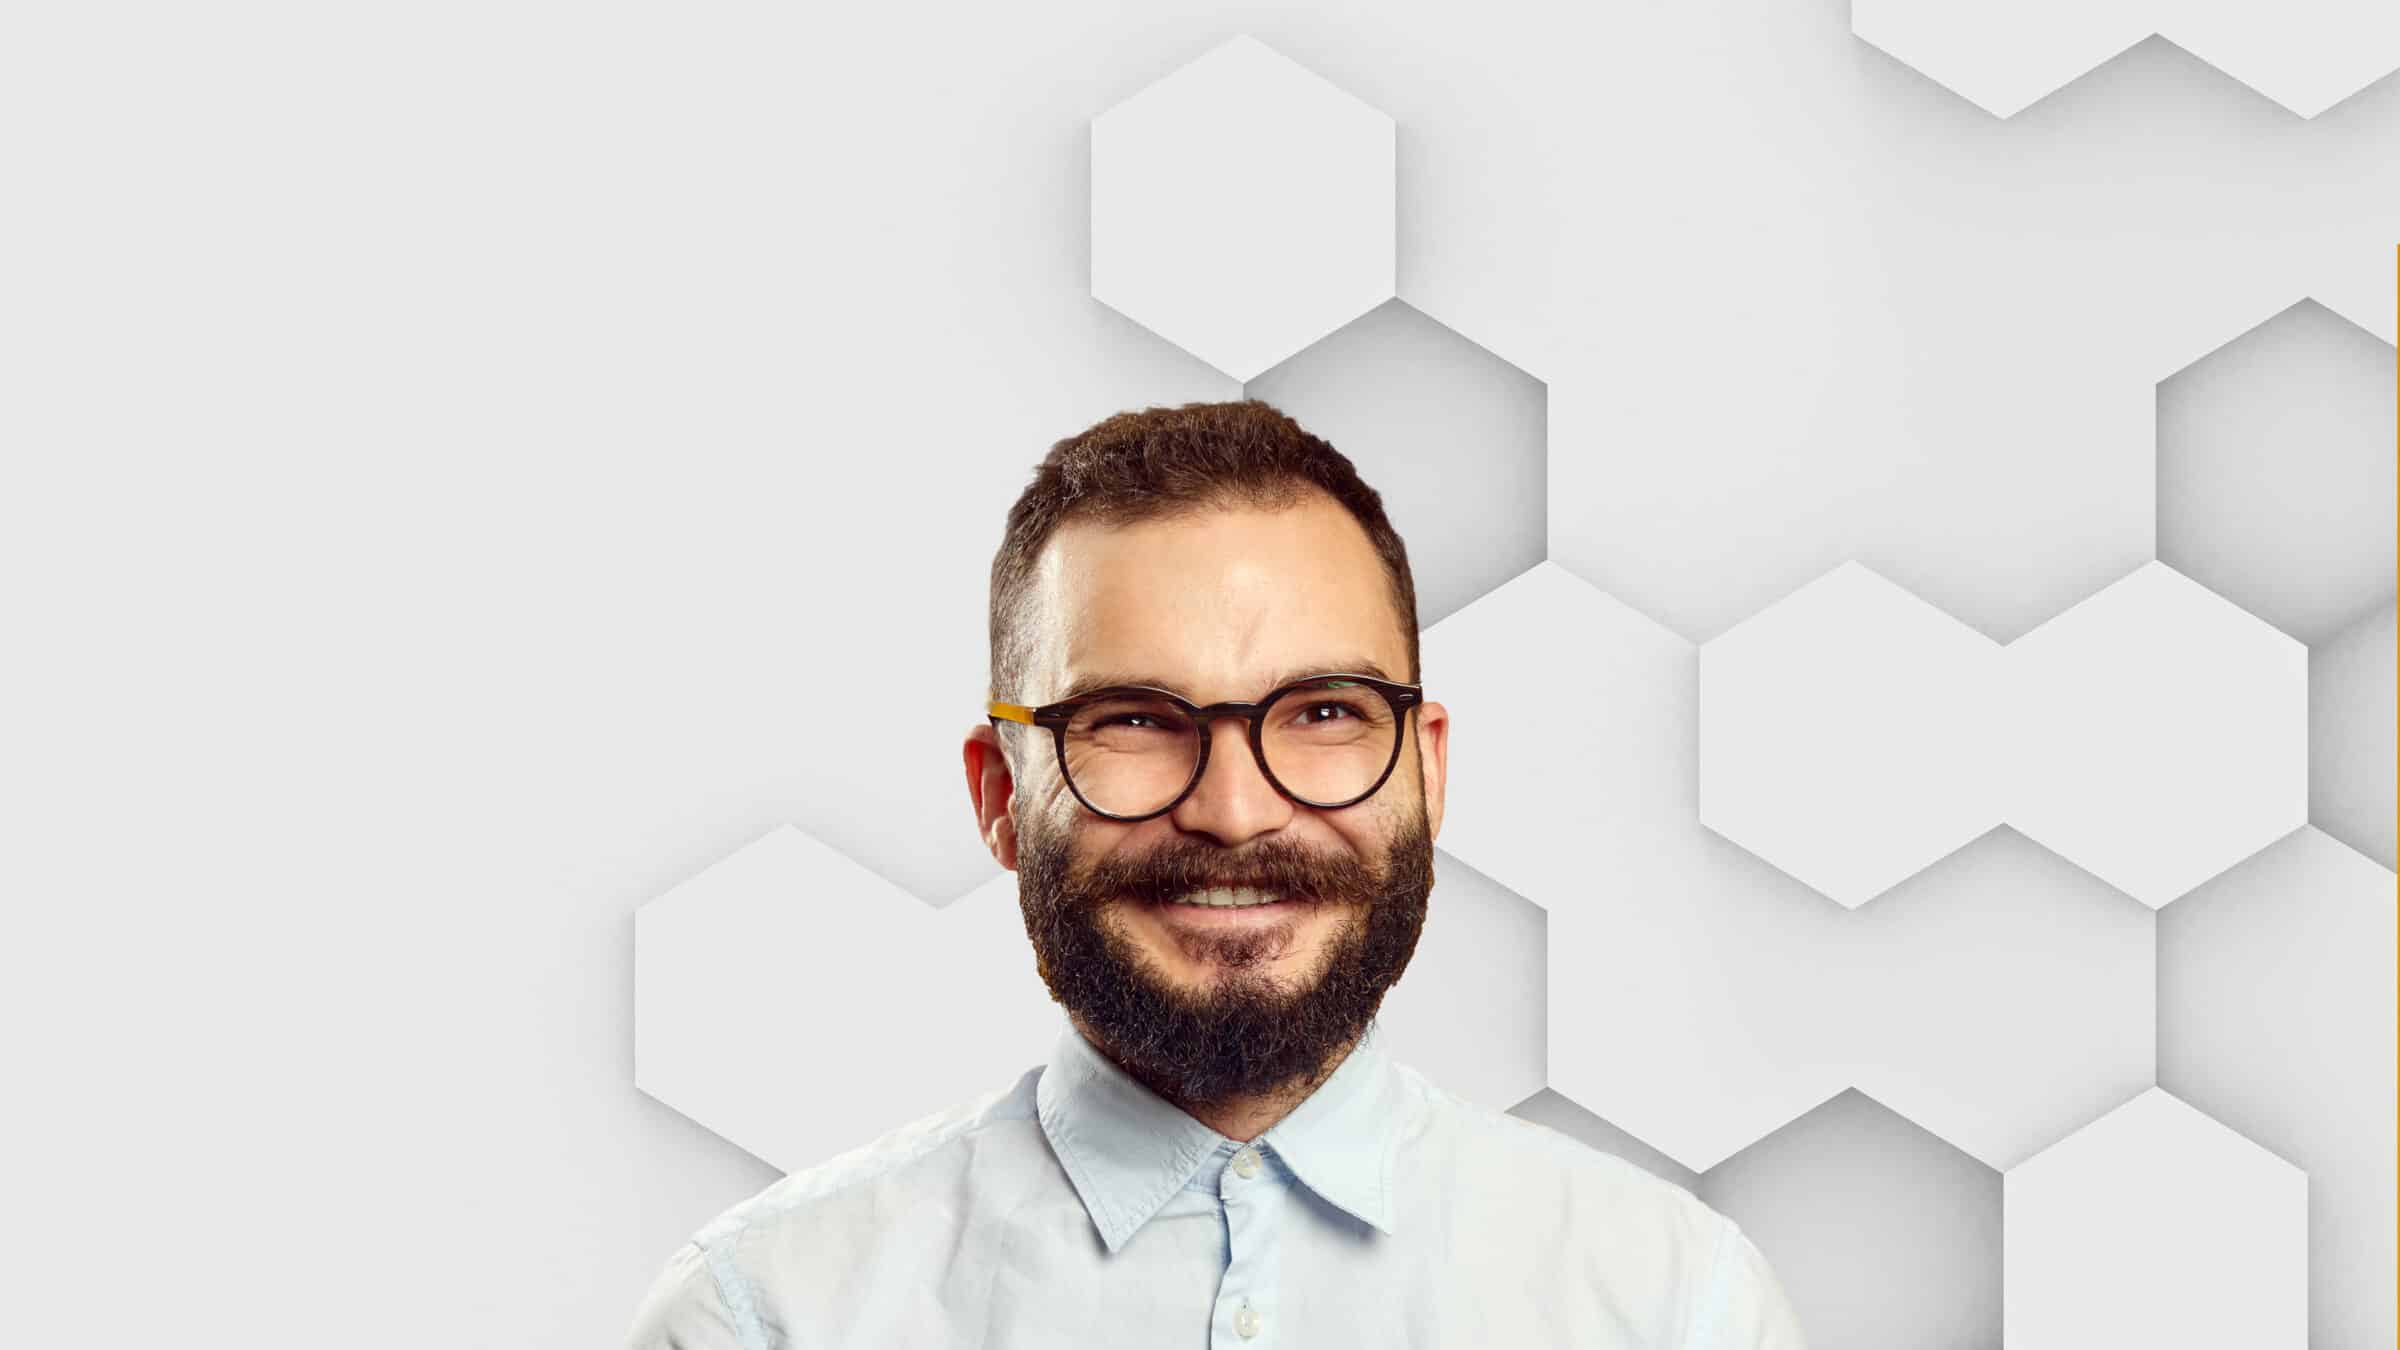 Ein Mann mit Bart und Brille lächelt.